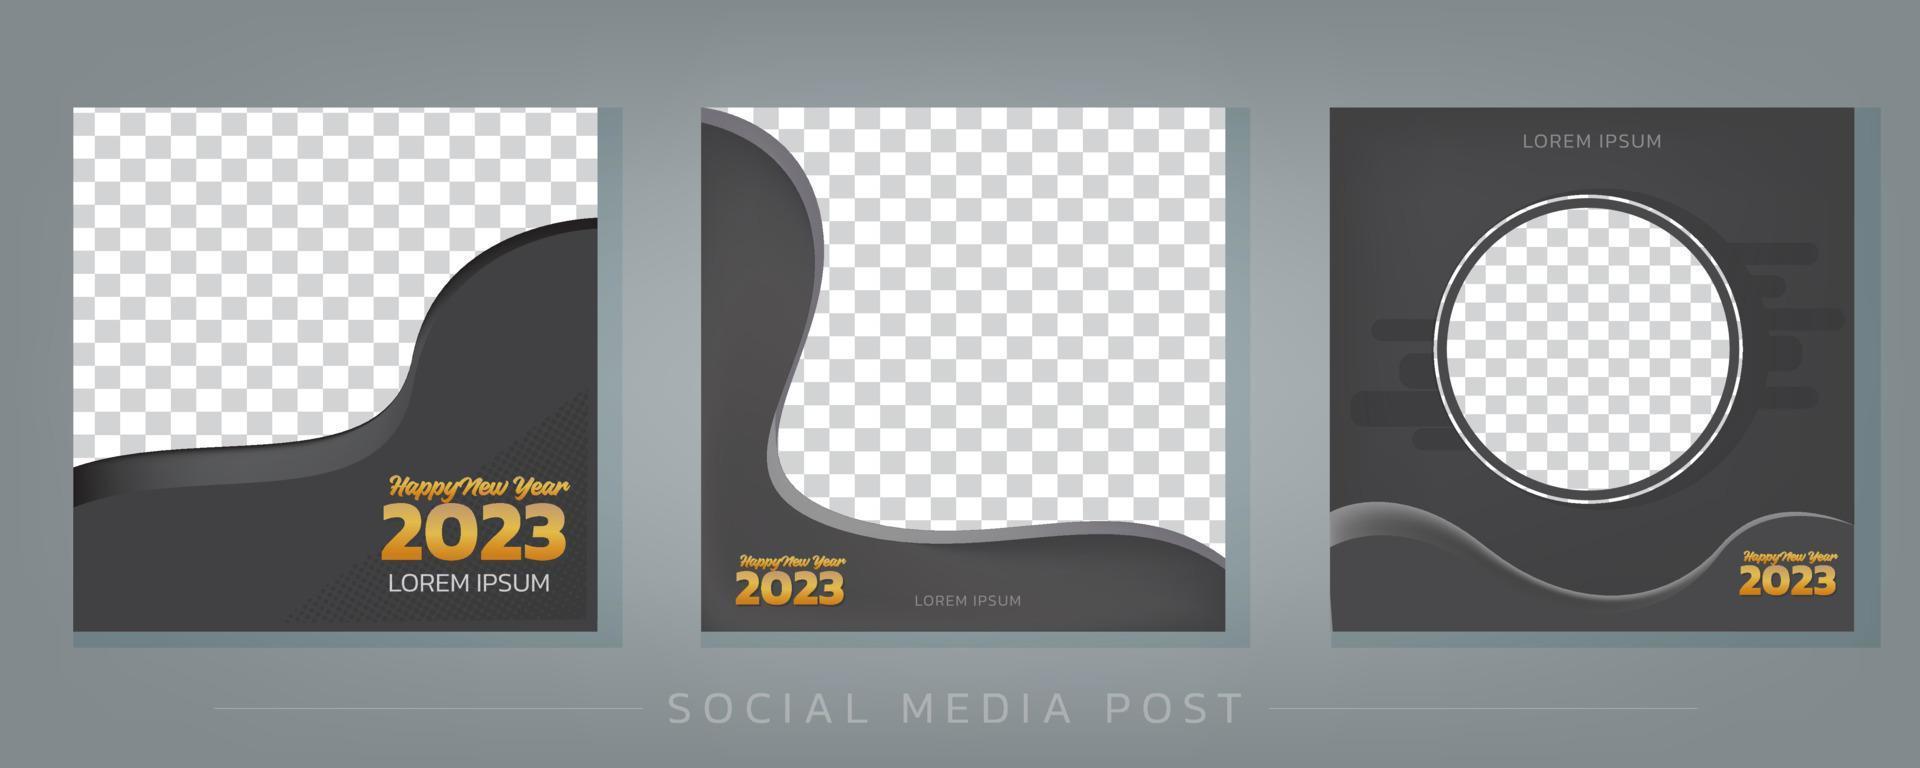 bannière noire carrée moderne avec un espace pour les images. ensemble de conception de modèle de publication edia socmial bonne année 2023 vecteur